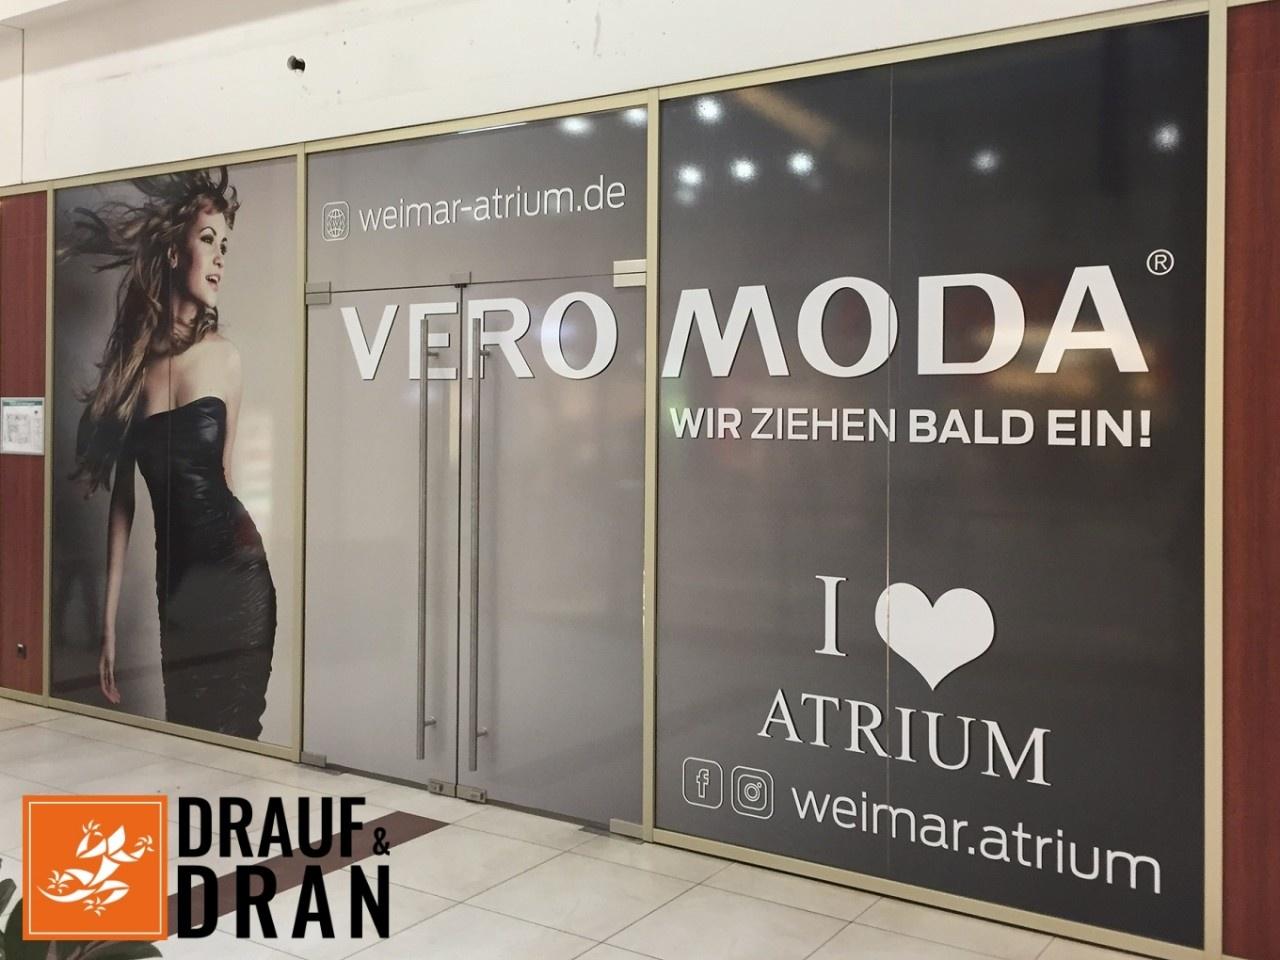 Drauf und Dran - Weimar Atrium